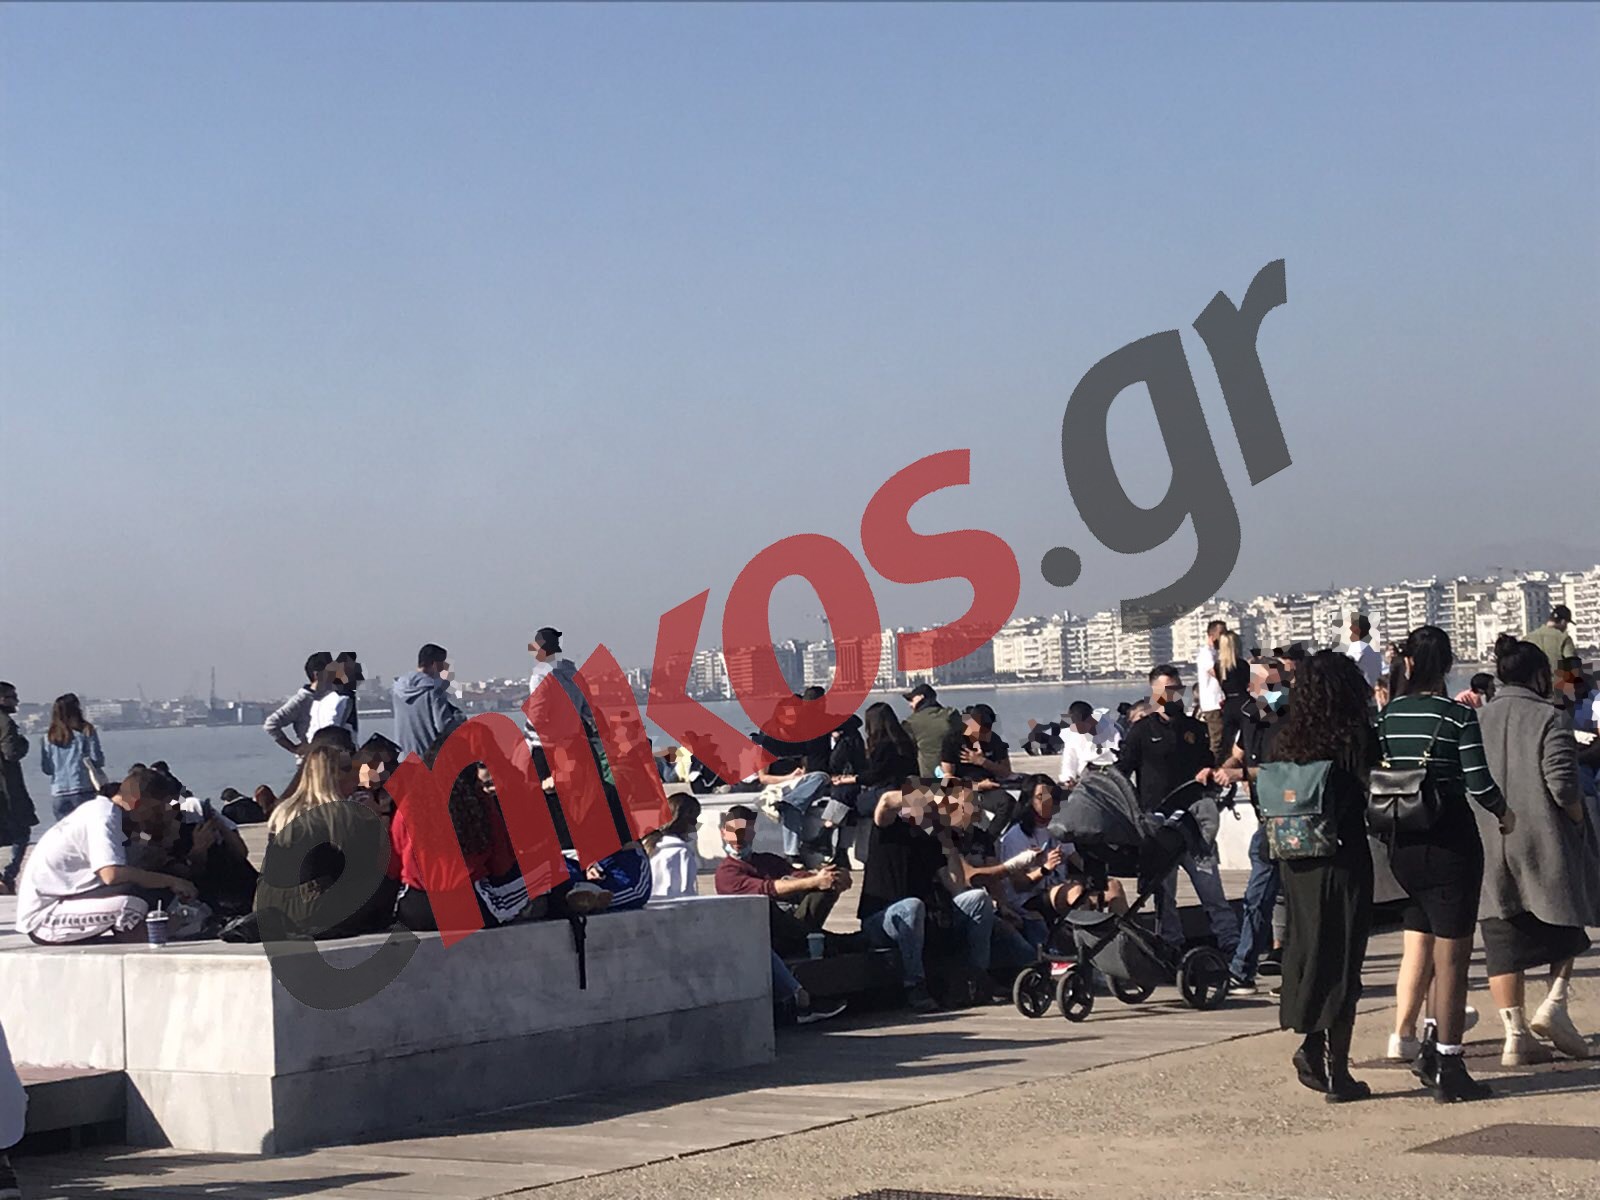 Εικόνες συνωστισμού στη Θεσσαλονίκη λίγο πριν από την απαγόρευση κυκλοφορίας – ΦΩΤΟ αναγνώστη